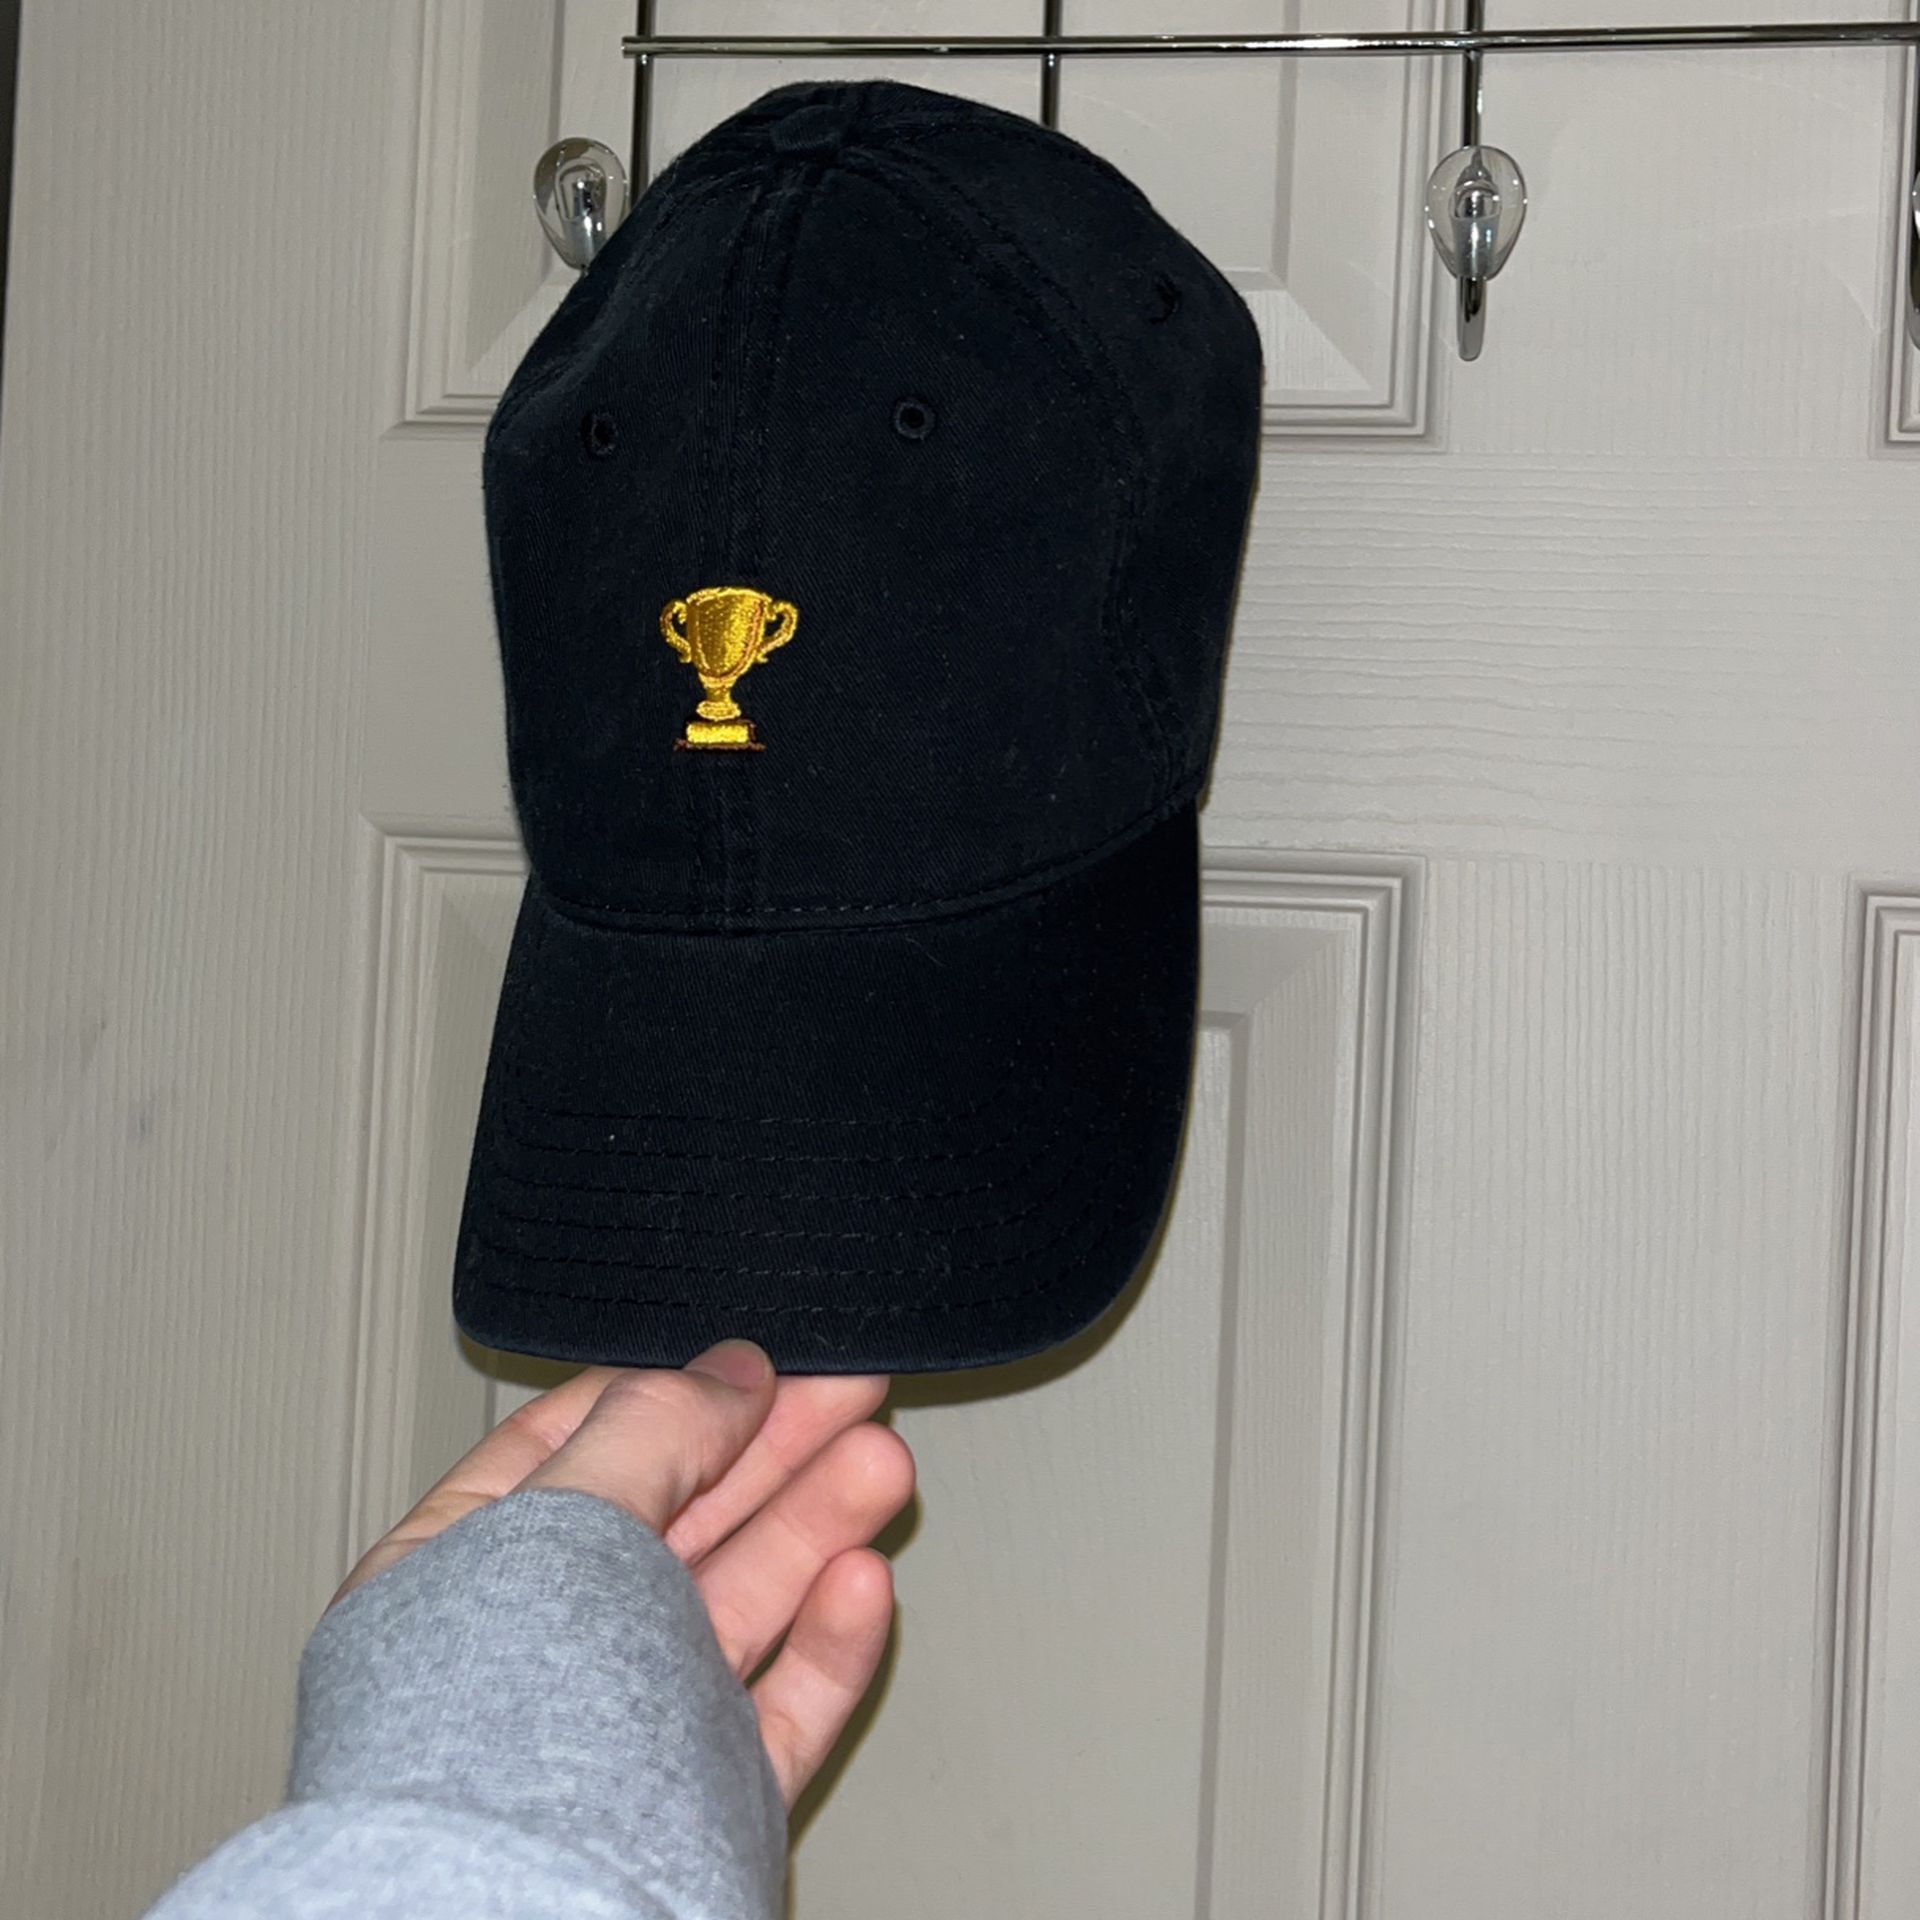 Black Hat (fits Most) - Adjustable 